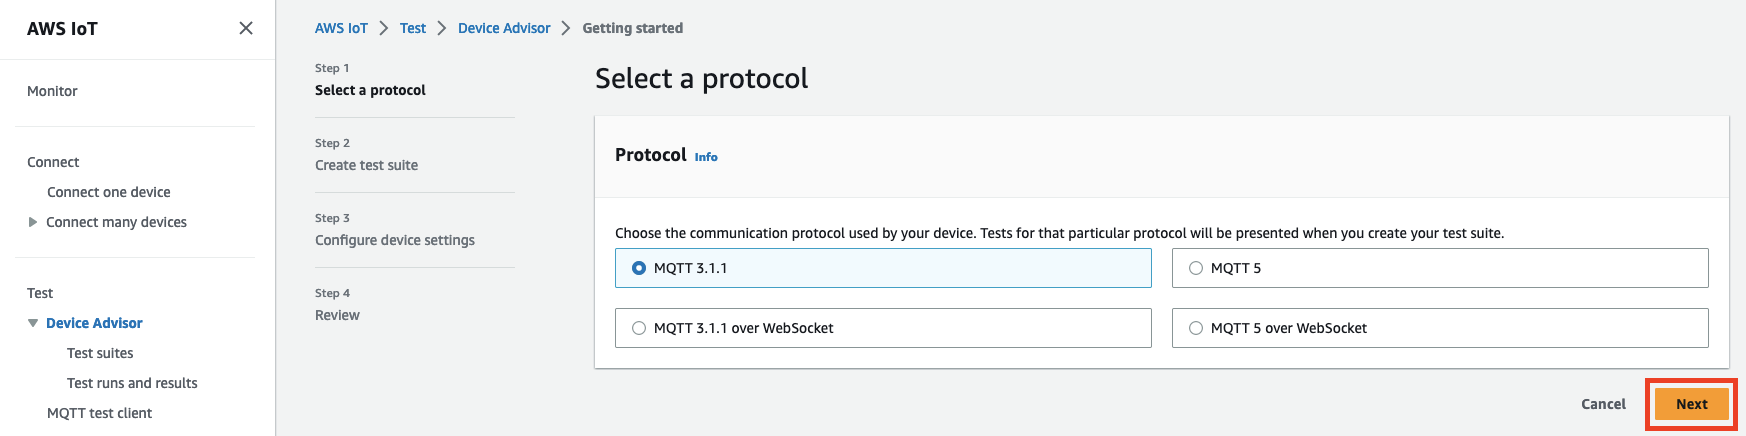 Interfaz de Device Advisor que muestra las opciones para seleccionar un protocolo de comunicación (MQTT 3.1.1, MQTT 3.1.1 over WebSocket, MQTT 5 over) WebSocket para probar un dispositivo IoT.